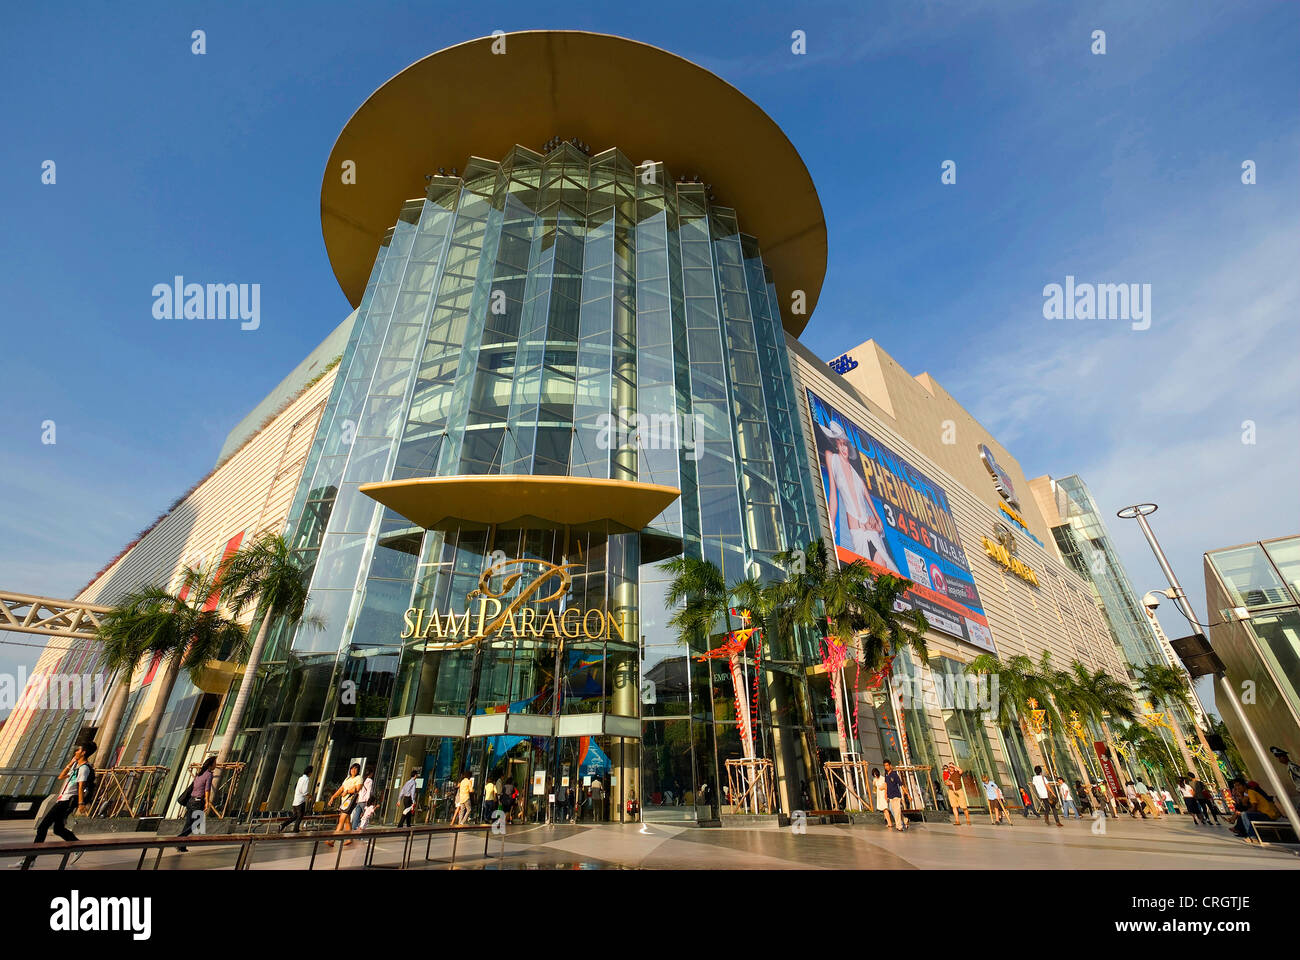 Siam Paragon Shopping Centre, Thailand, Bangkok Stock Photo